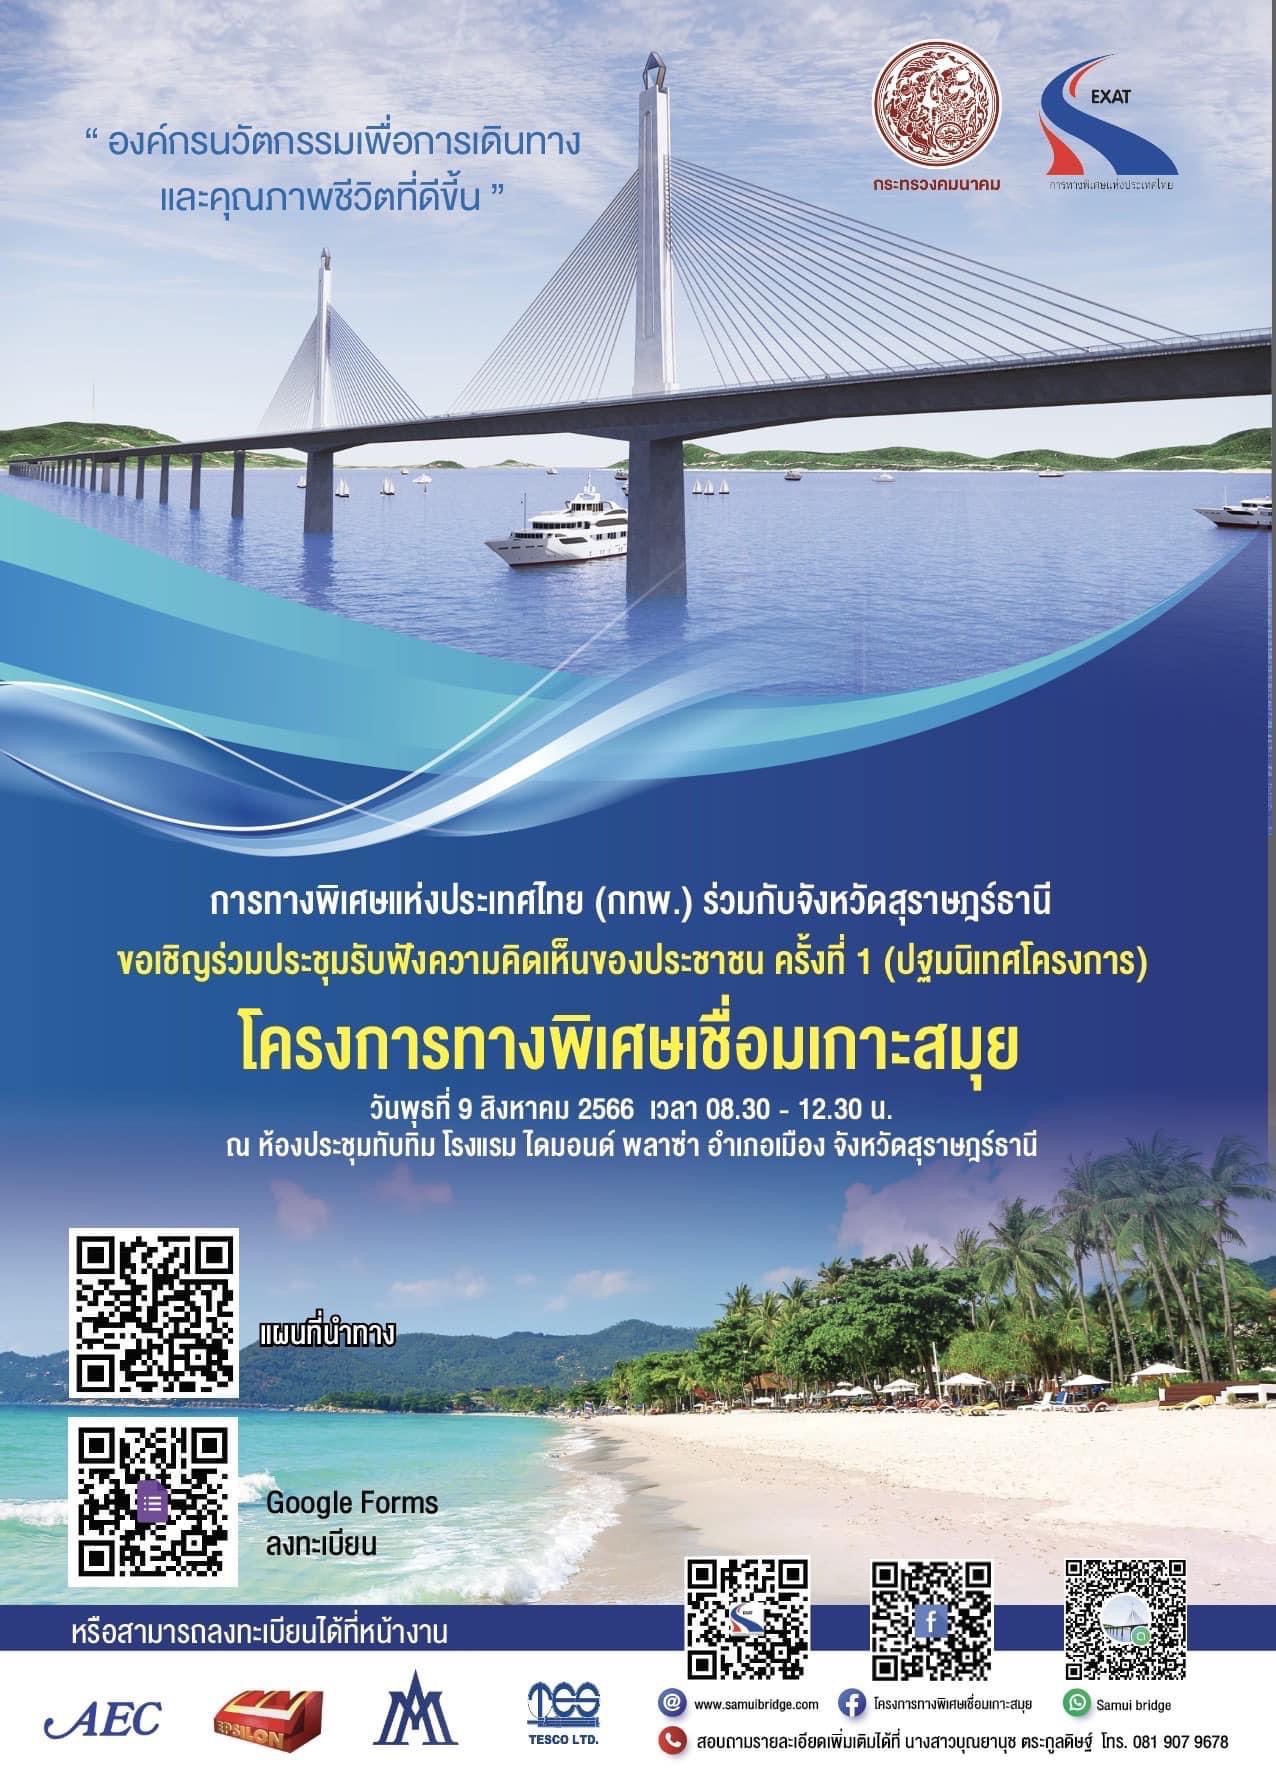 การทางพิเศษแห่งประเทศไทย (กทพ.) ร่วมกับจังหวัดสุราษฎร์ธานี ขอเชิญเข้าร่วมประชุมรับฟังความคิดเห็นของประชาชน ครั้งที่ 1 (ปฐมนิเทศโครงการ)